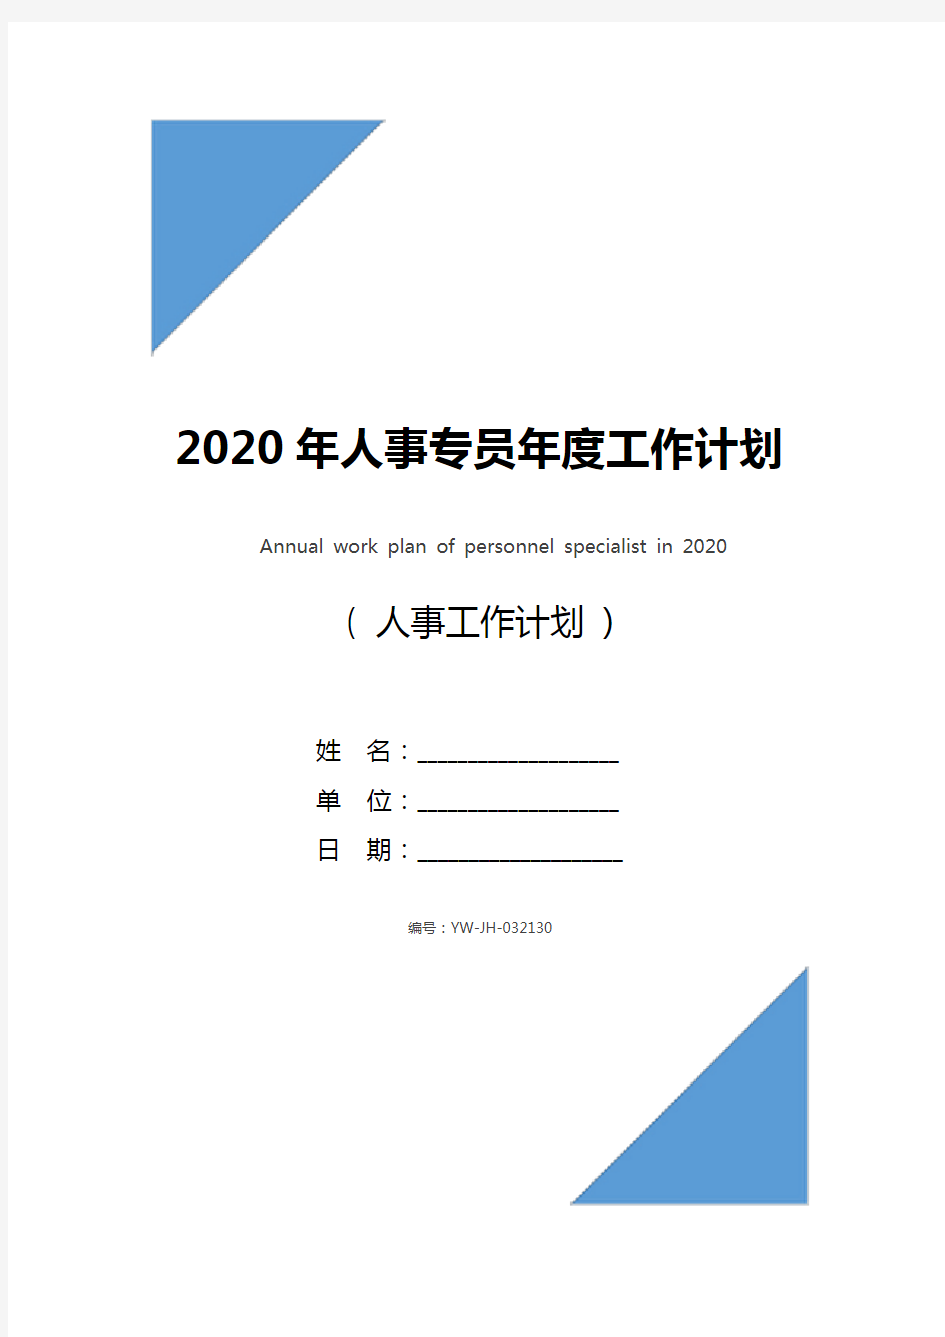 2020年人事专员年度工作计划